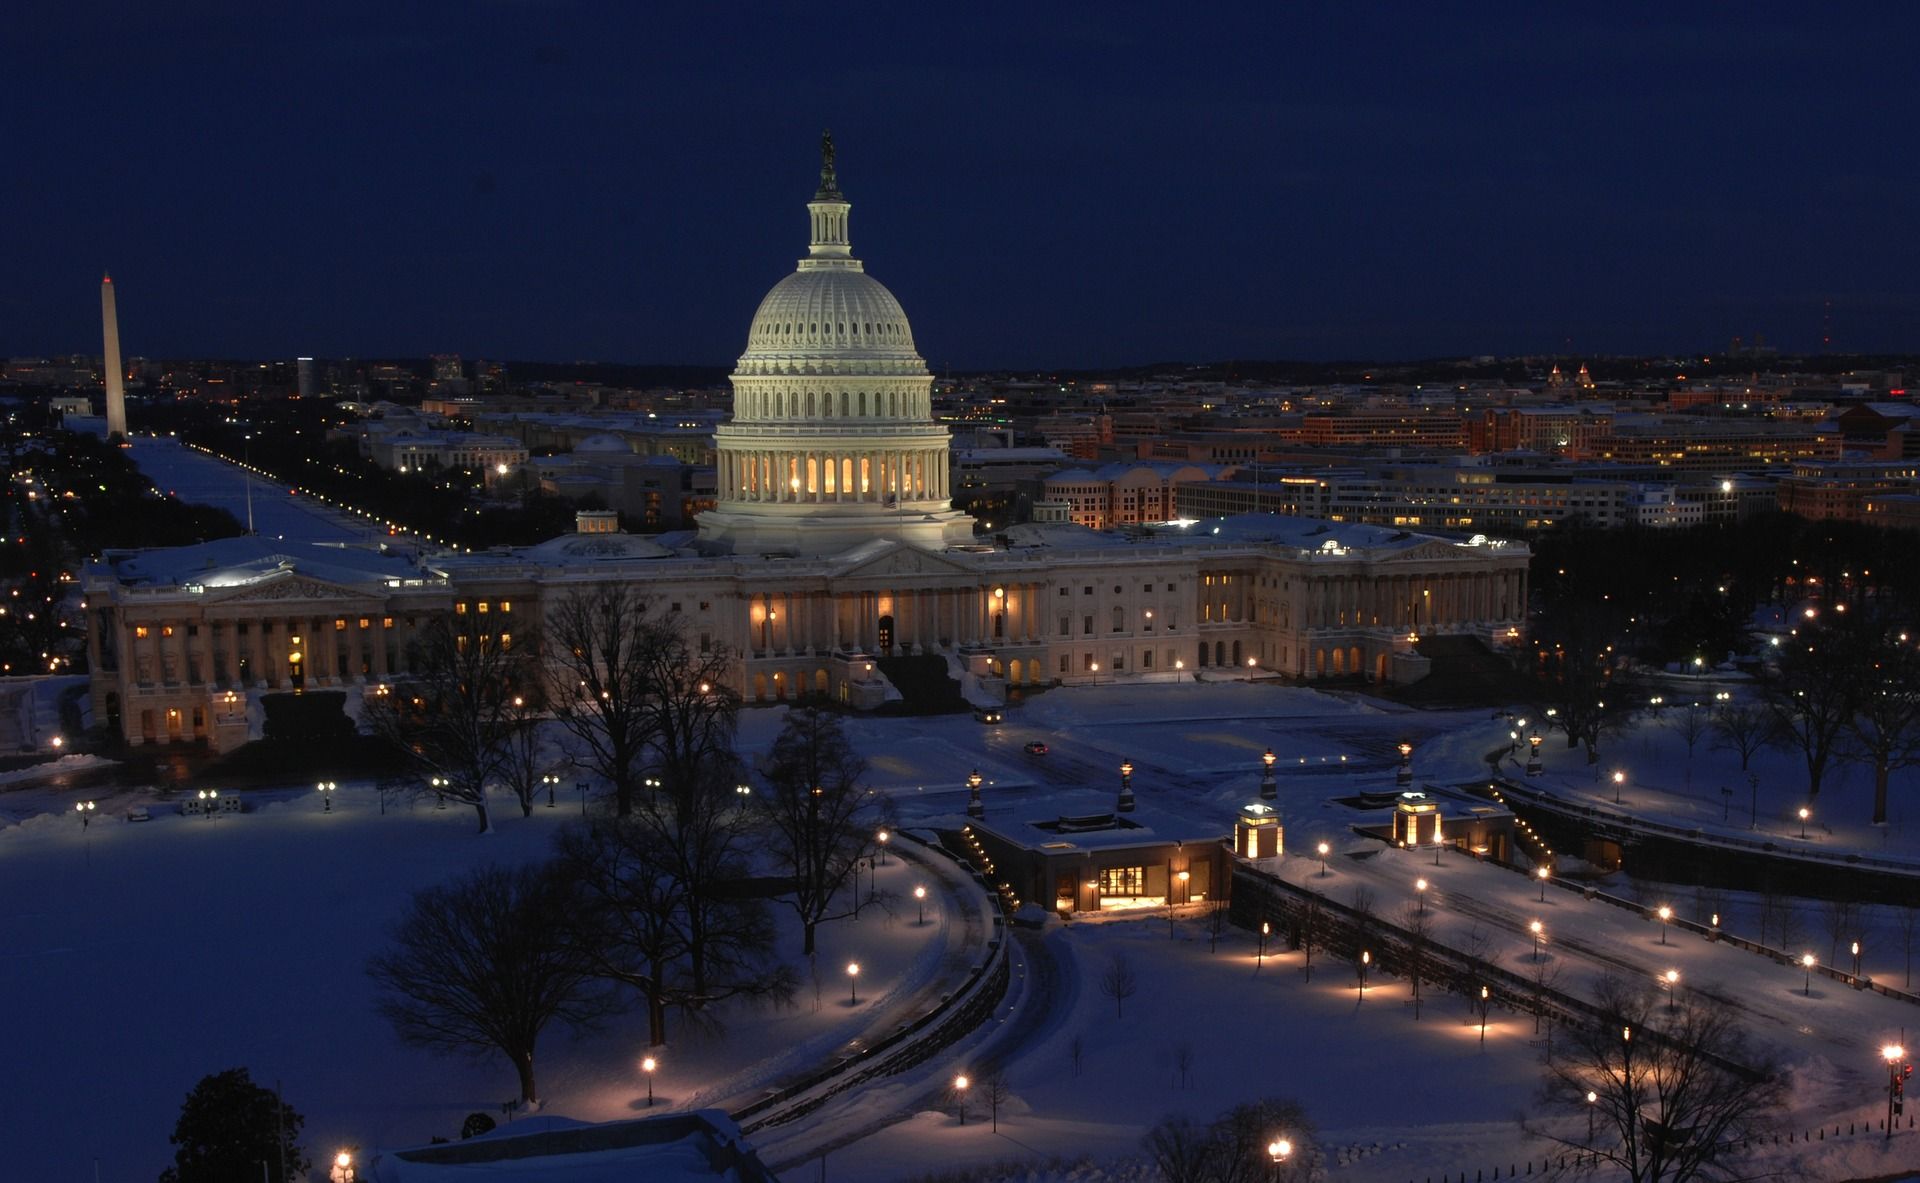 Washington DC at night